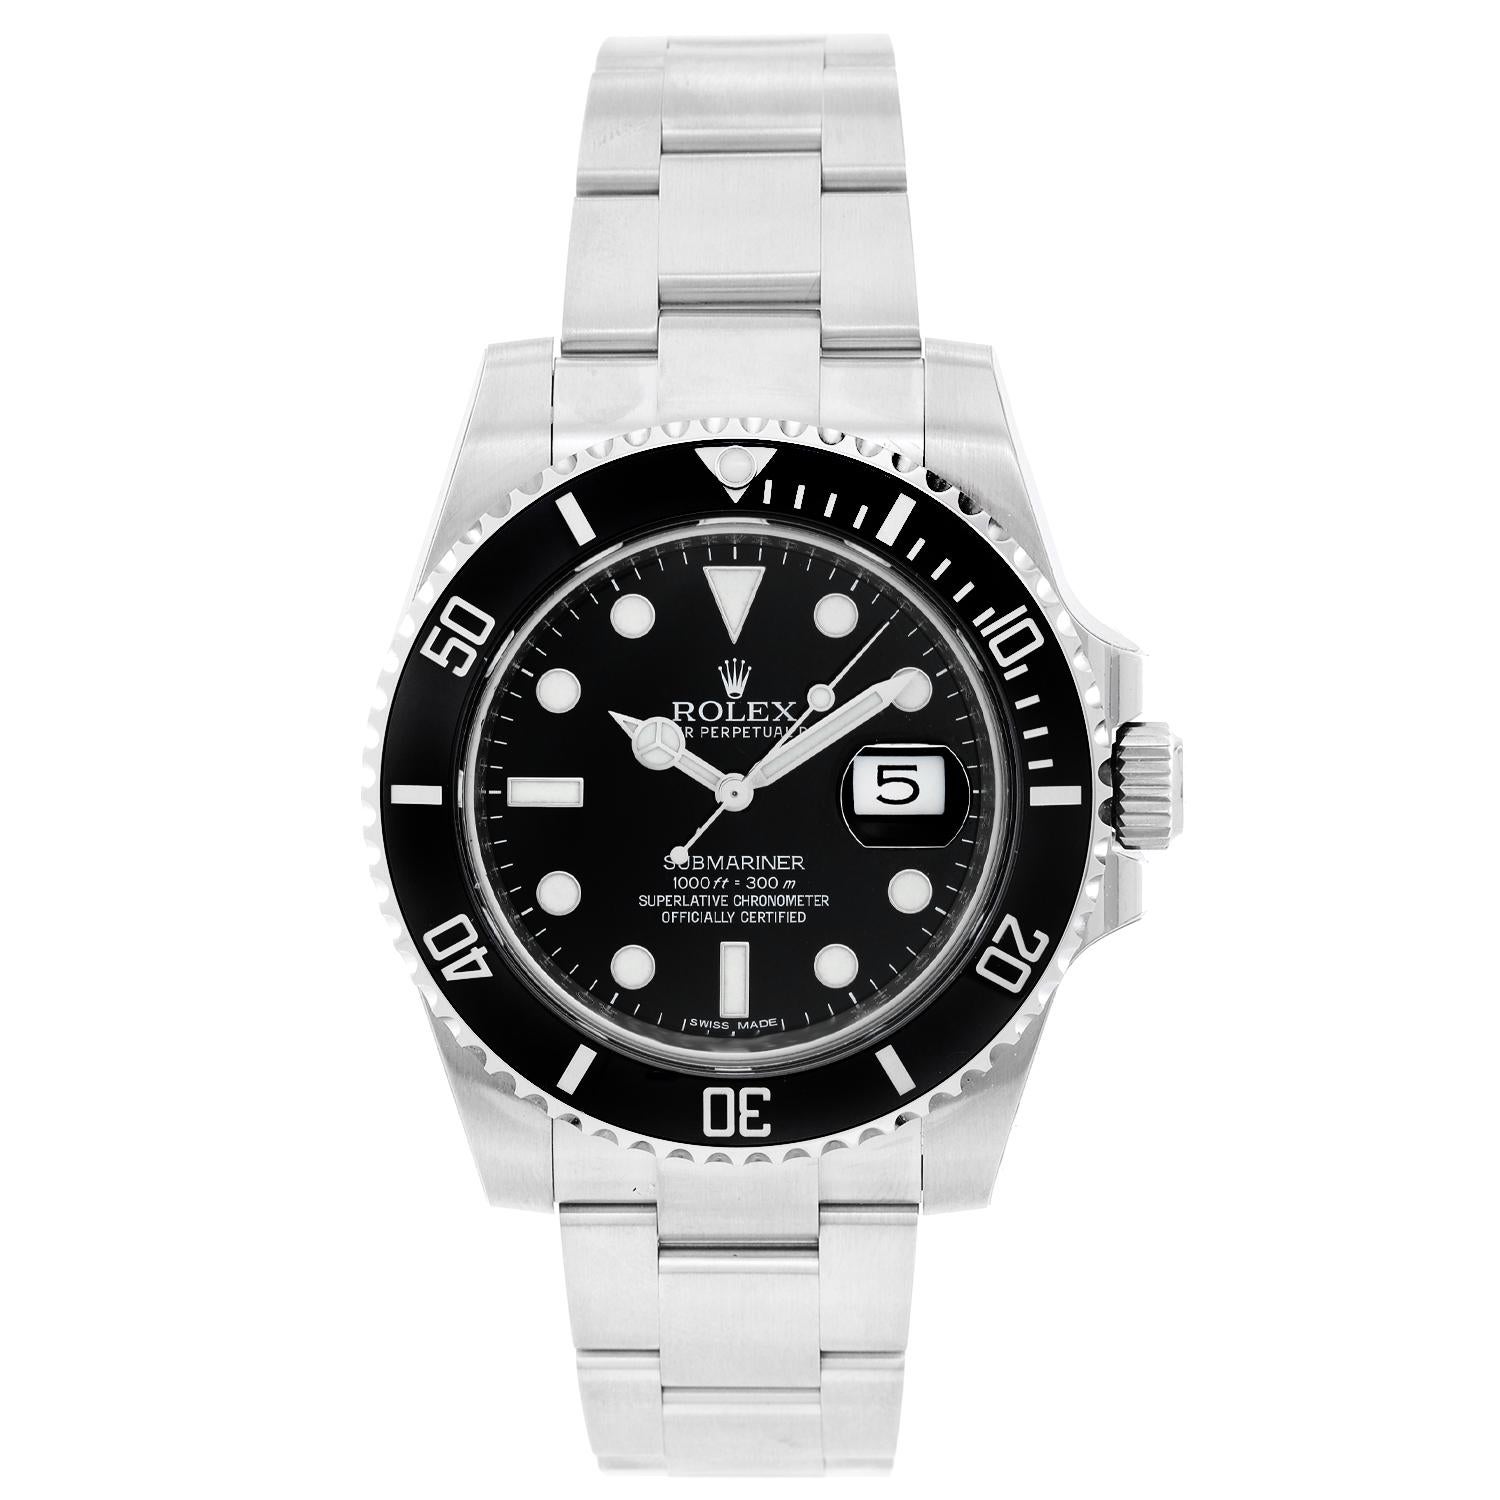 Rolex Submariner Men's Stainless Steel Watch 116610